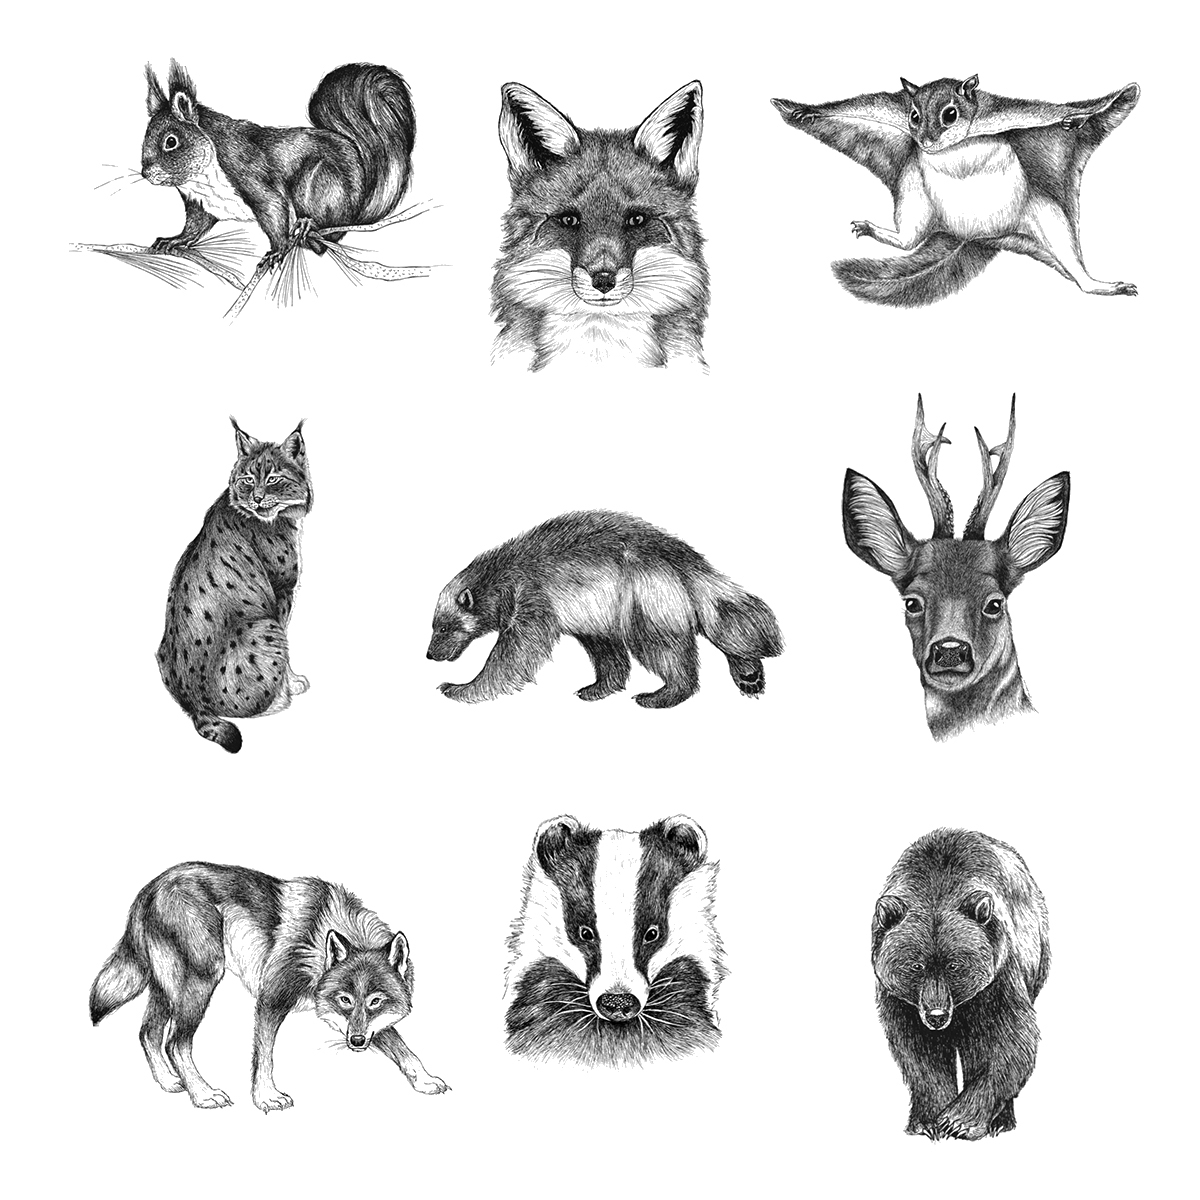 Pohjolan eläimet -korttisarja (9 erilaista korttia) – Luontokauppa